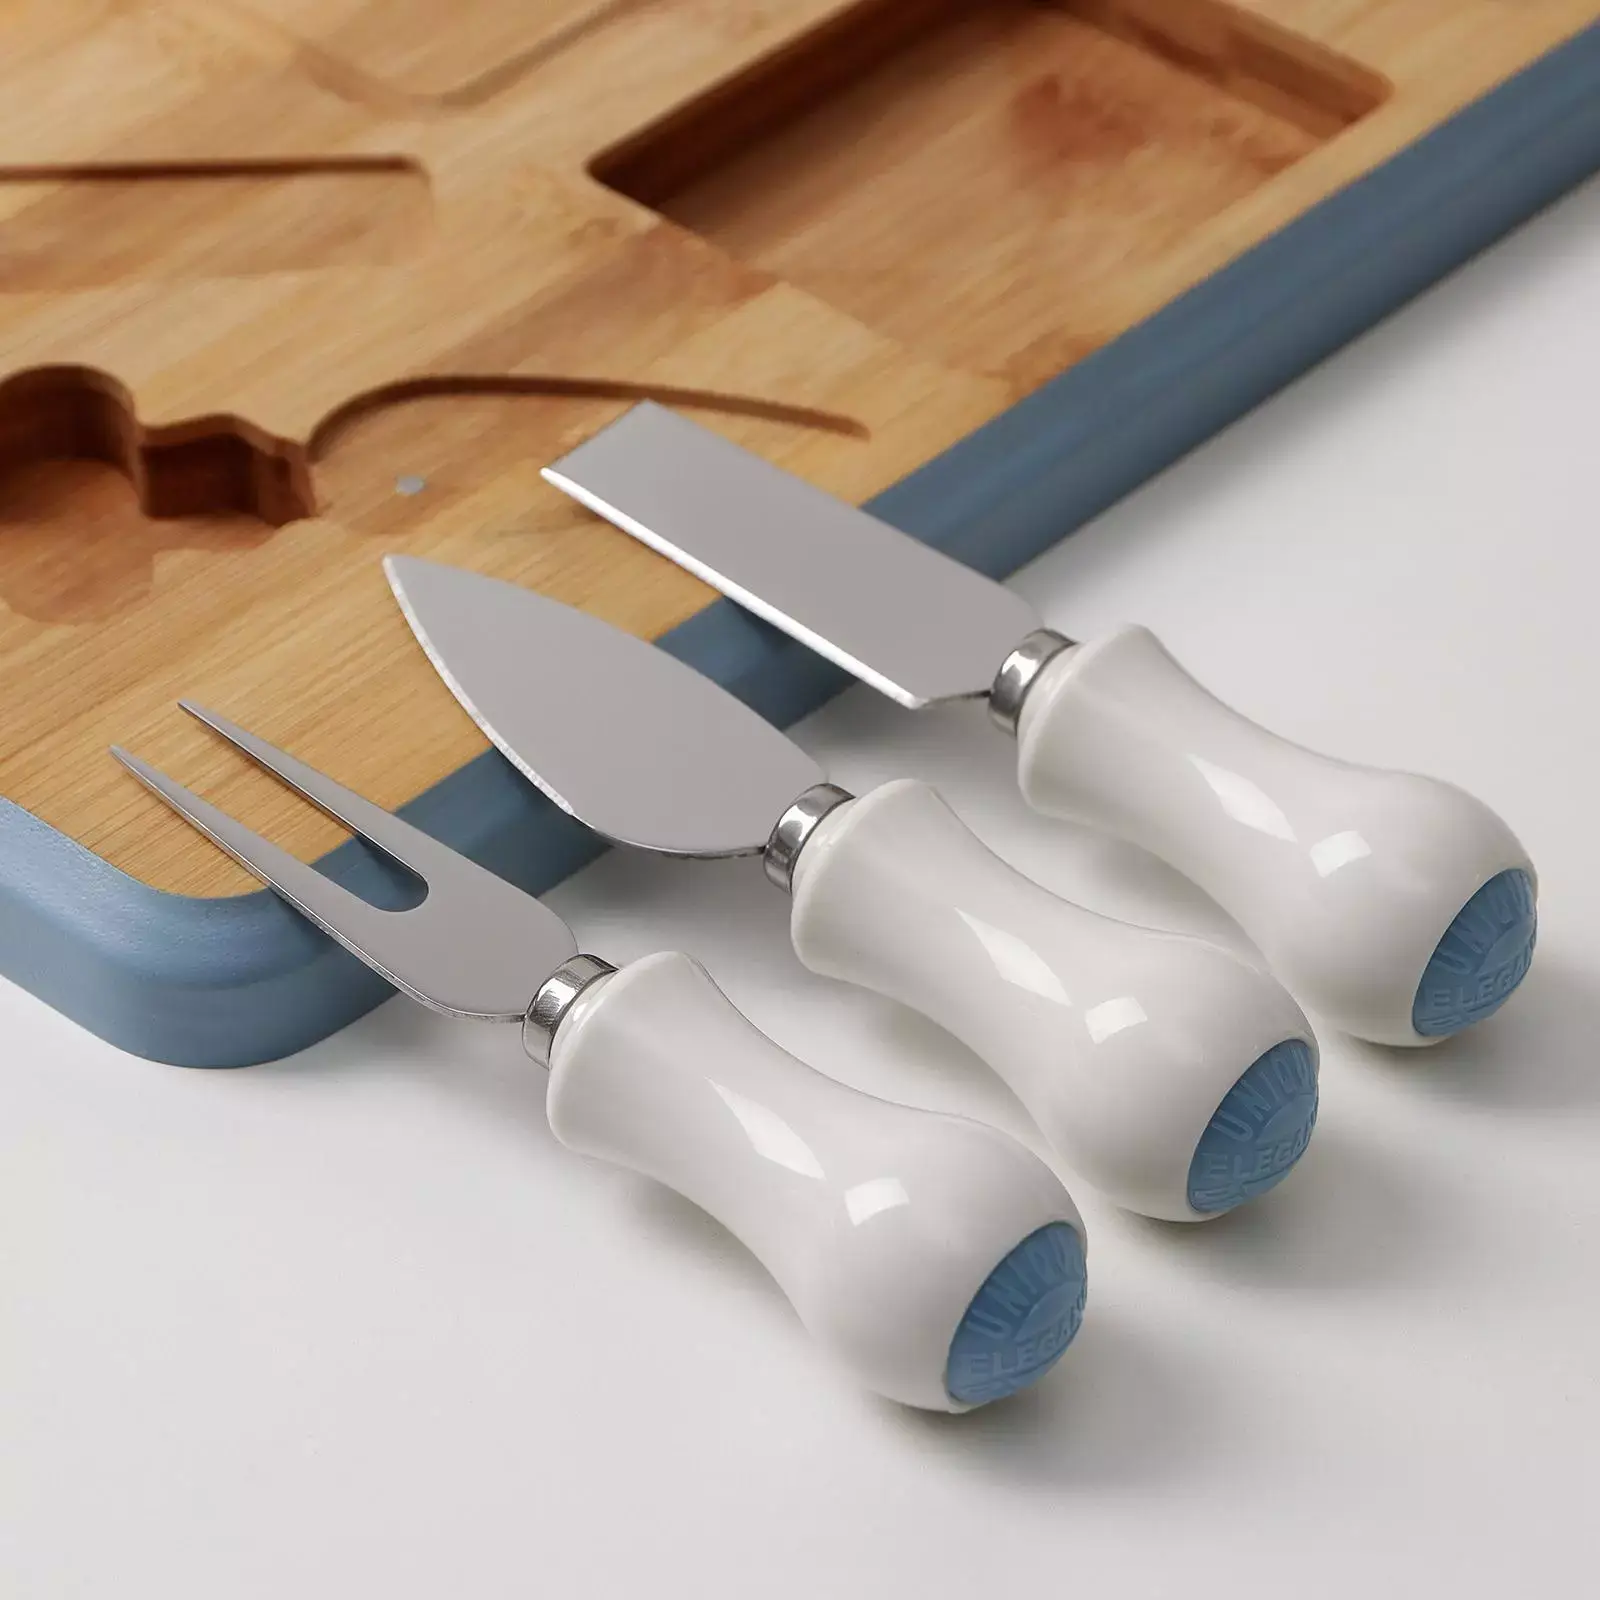 Подарочный набор для подачи сыра Amiro Сheese Set Bamboo-106 - фото